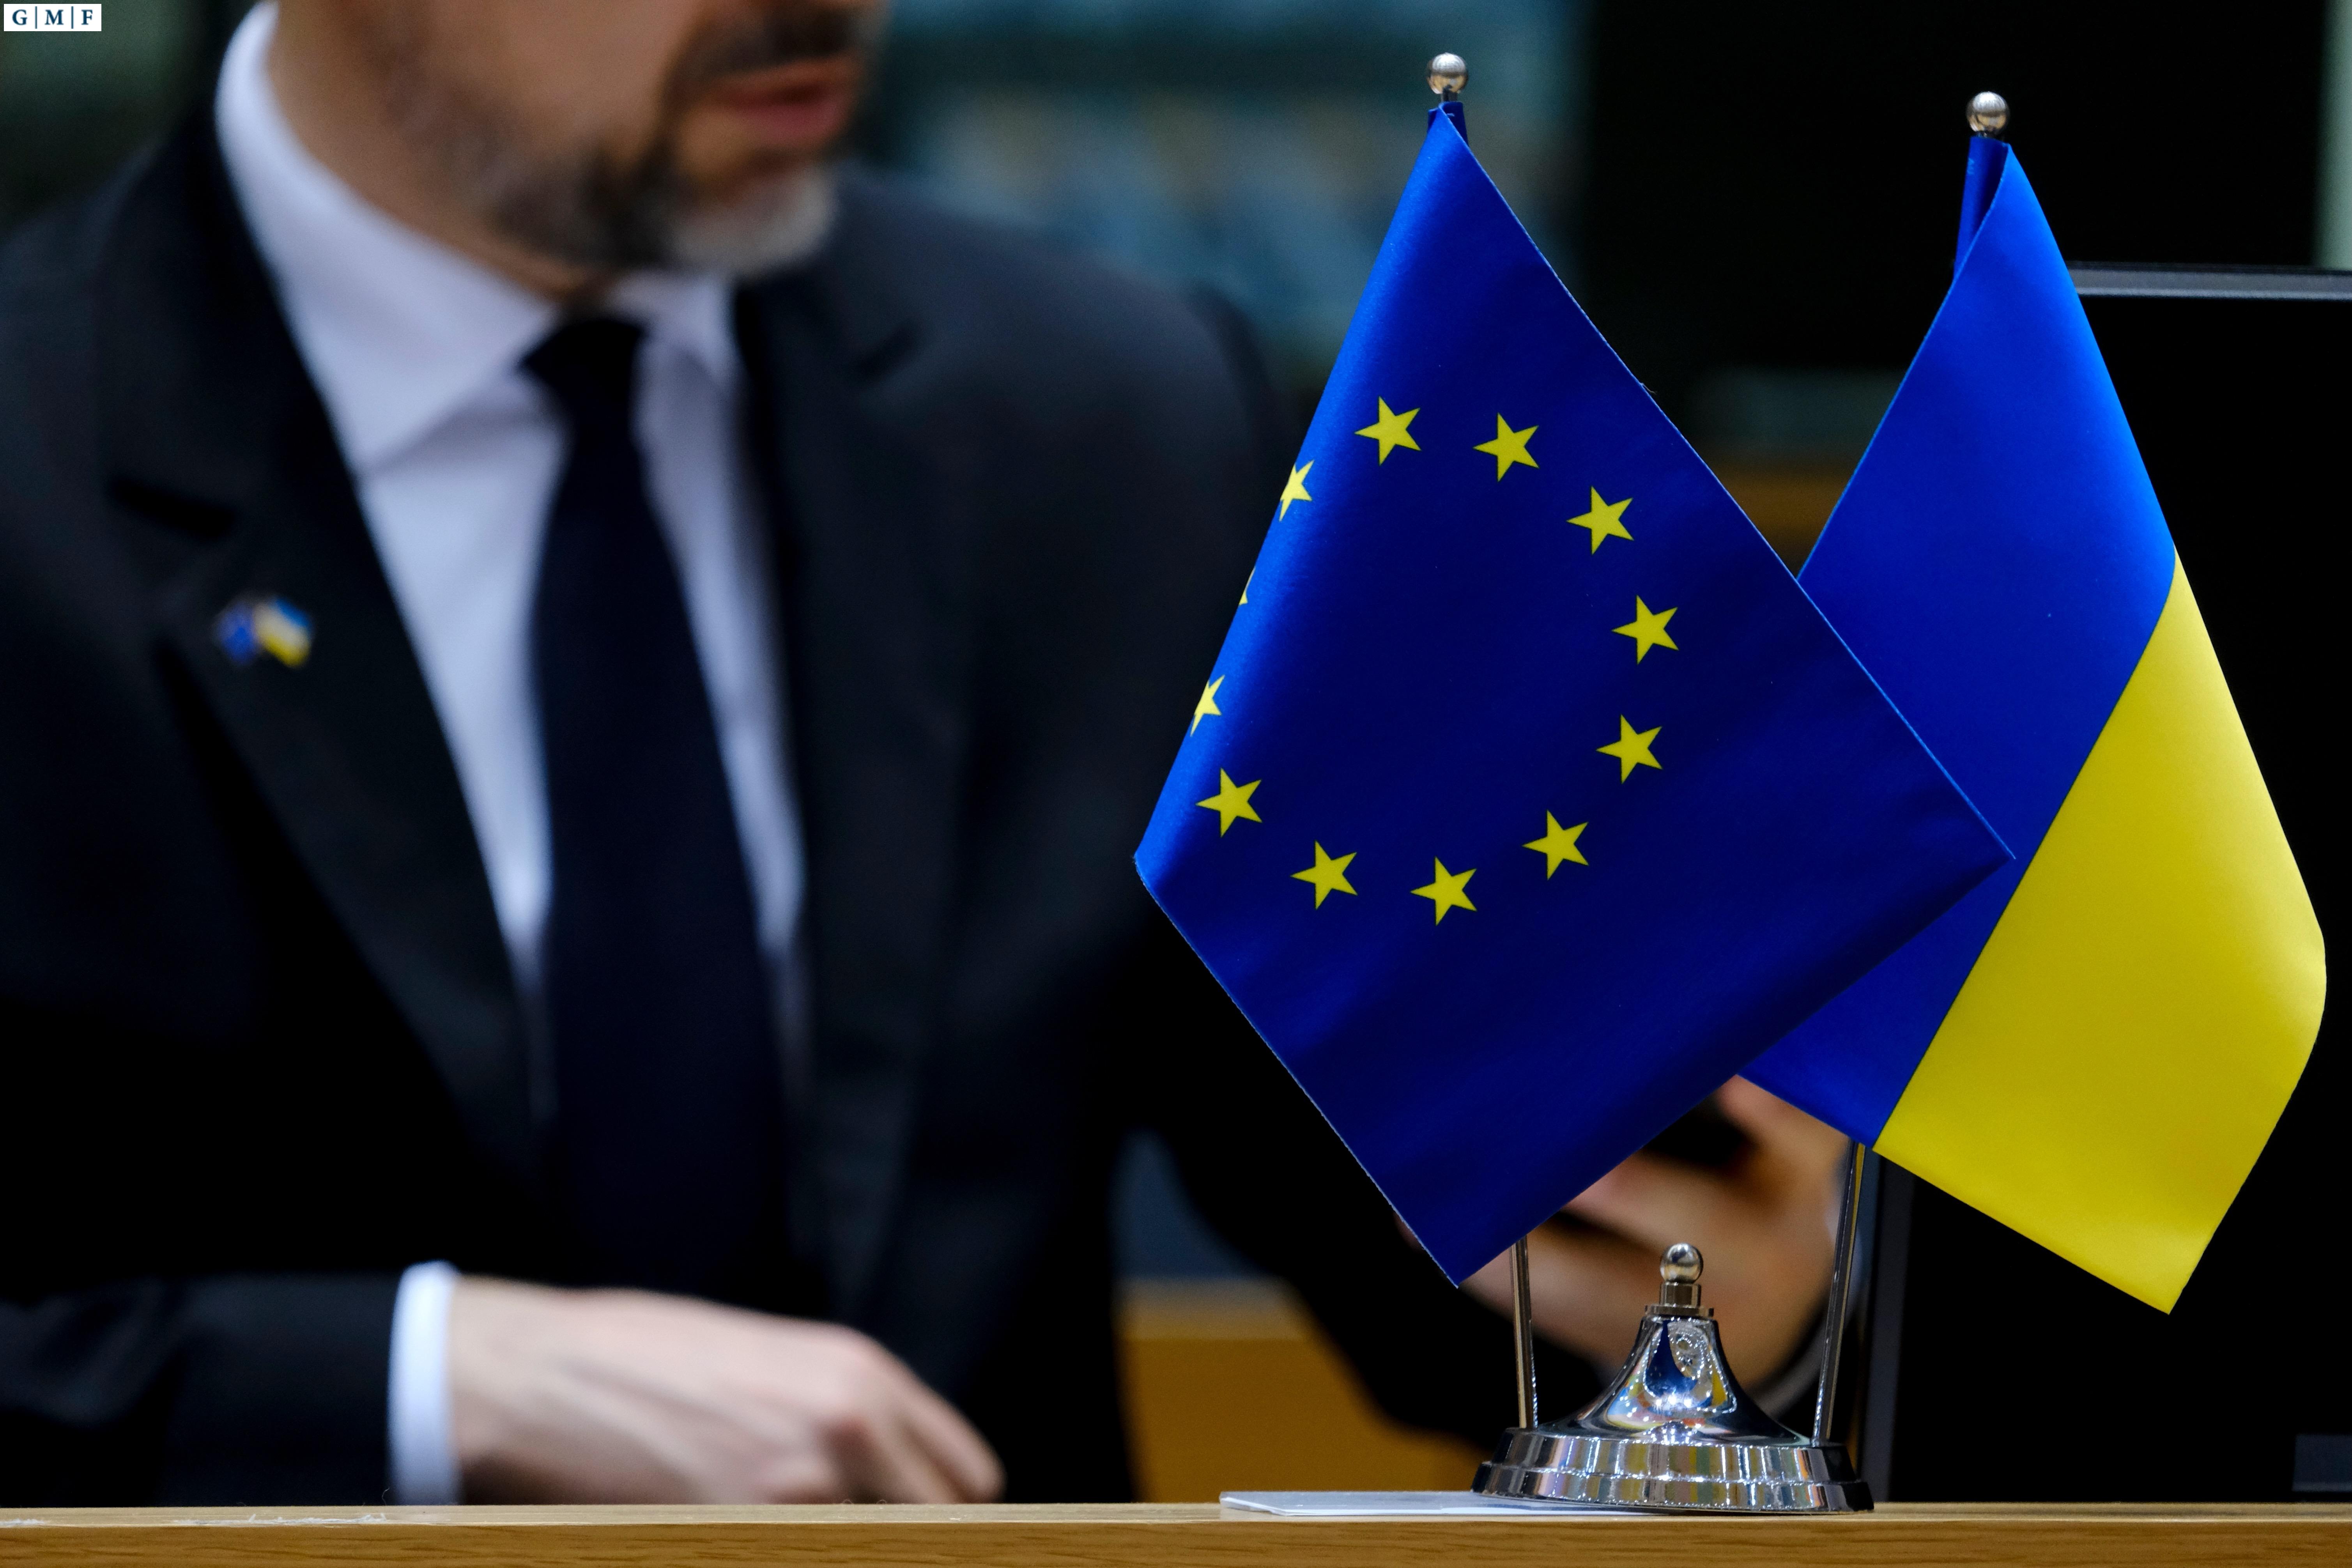 Europos indėlis į Ukrainą rodo patikimą partnerystę su Jungtinėmis Valstijomis